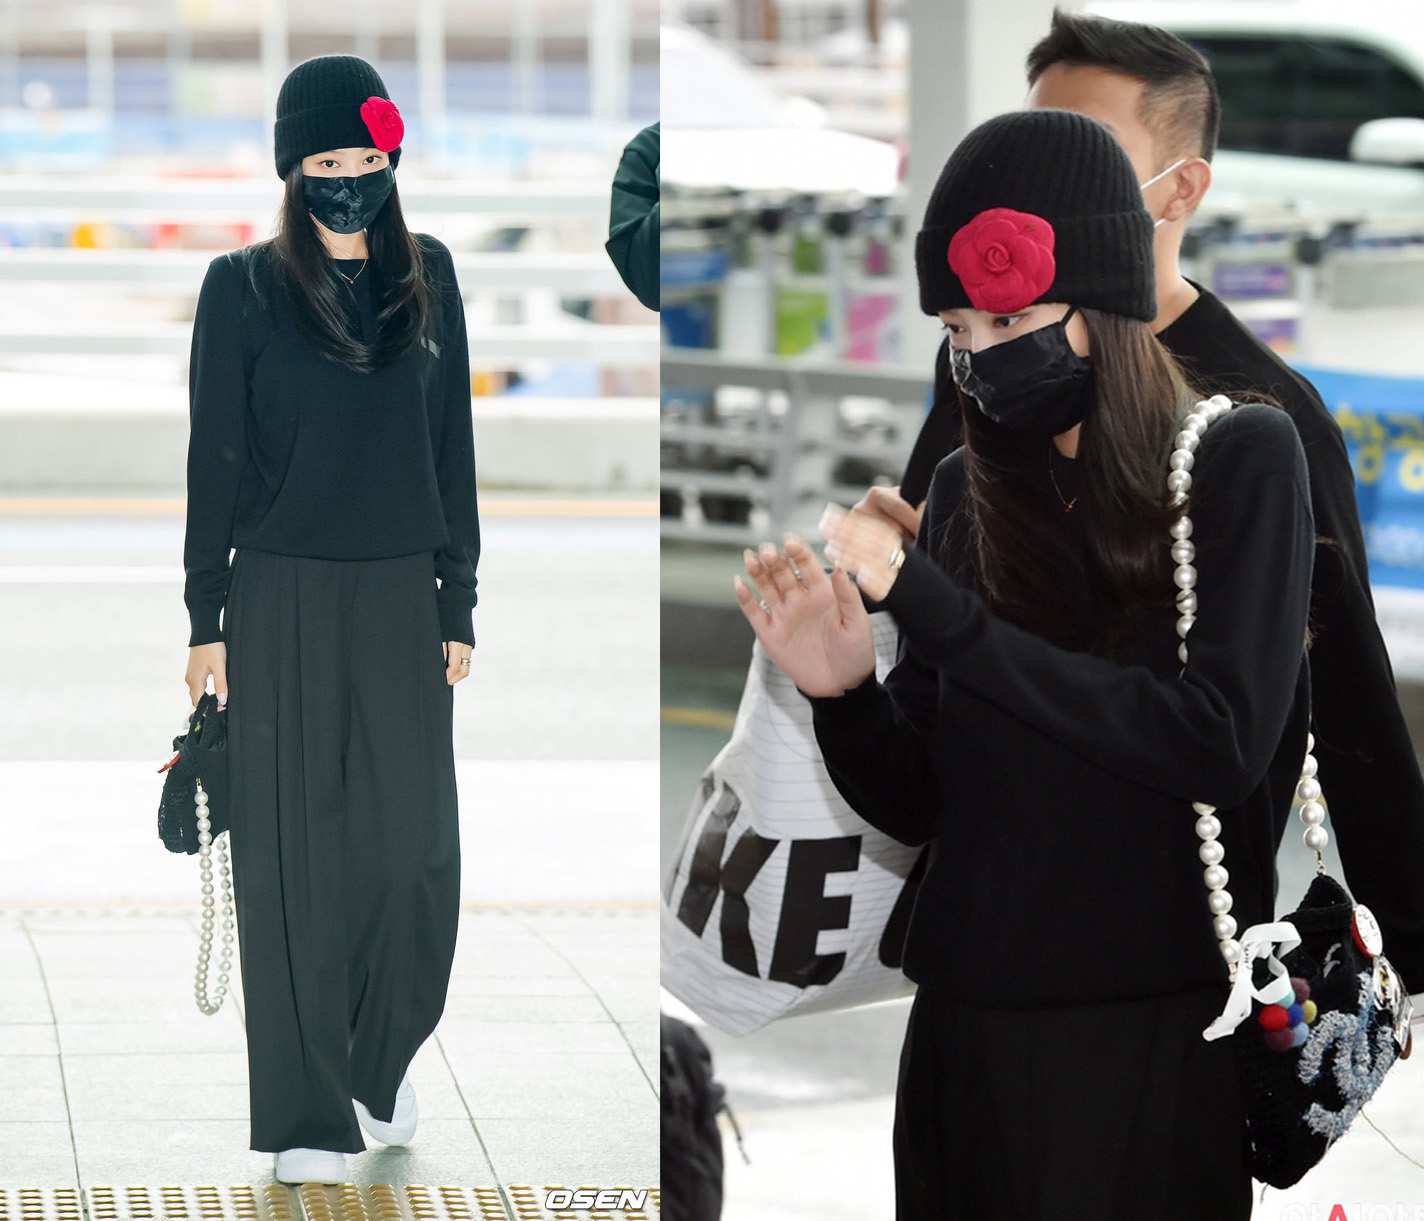 Không sôi nổi như lúc Jisoo và Rosé có mặt tại sân bay, Jennie lại 'khiêm tốn' với set đen từ đầu đến chân.